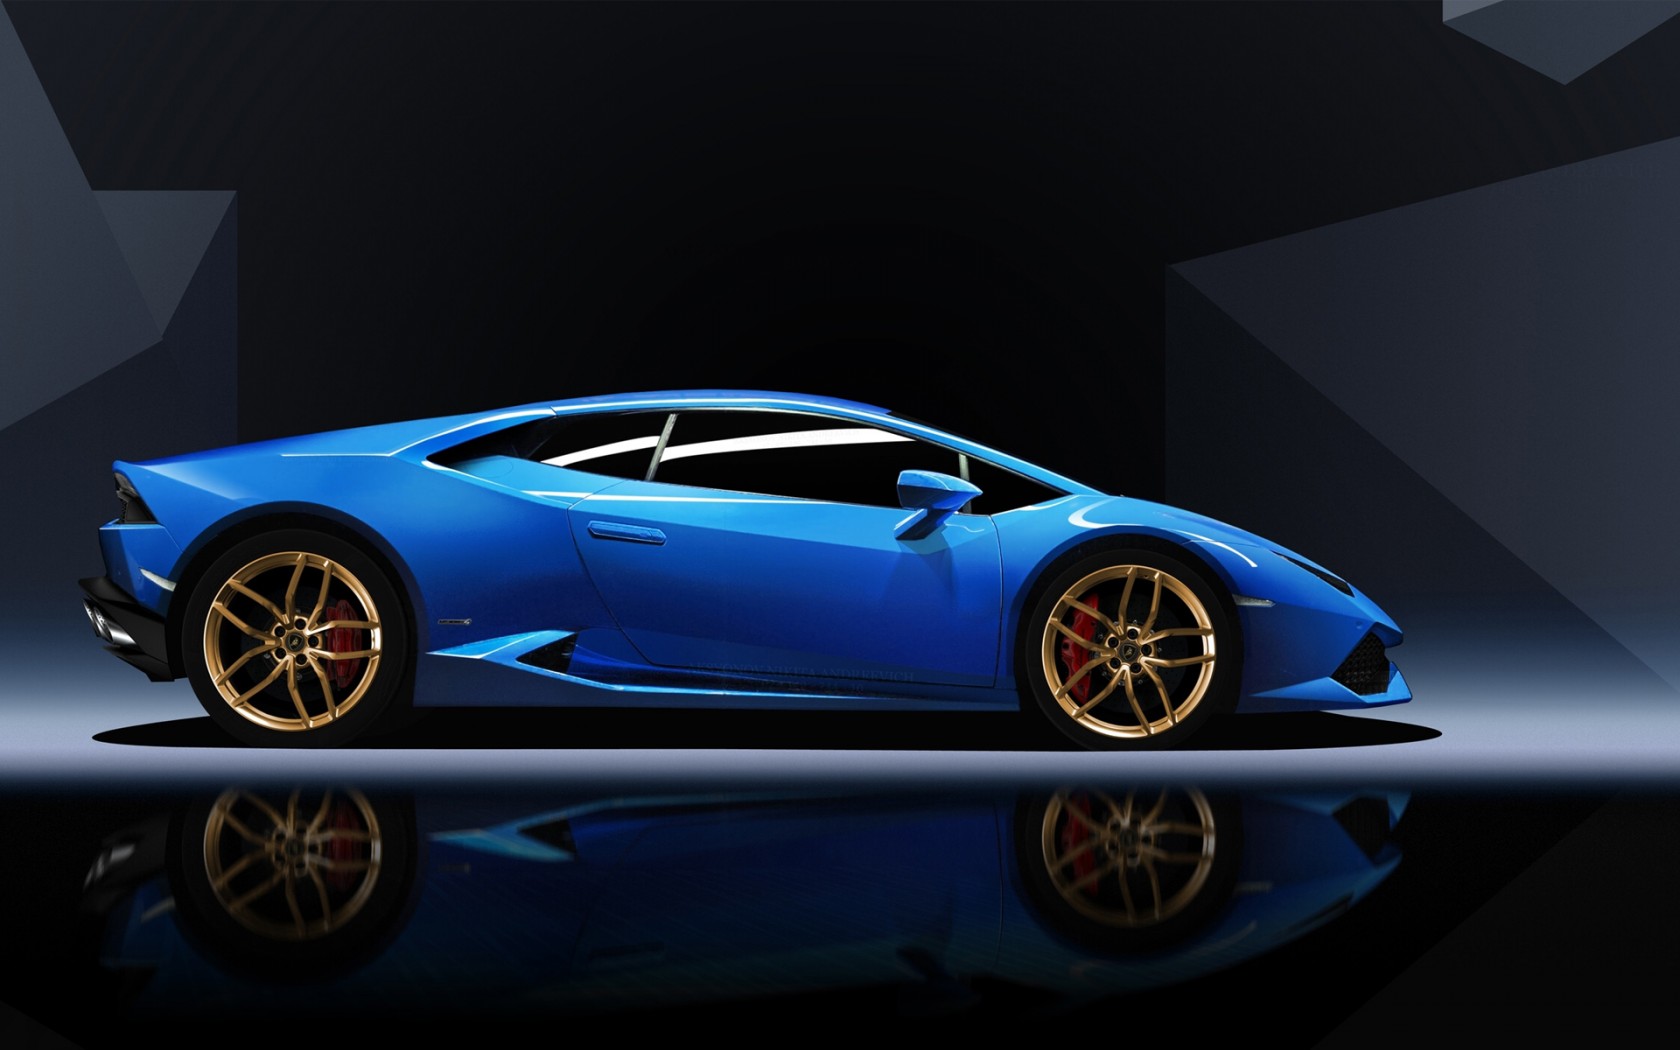 Blue Lamborghini Huracan Wallpaper HD Car